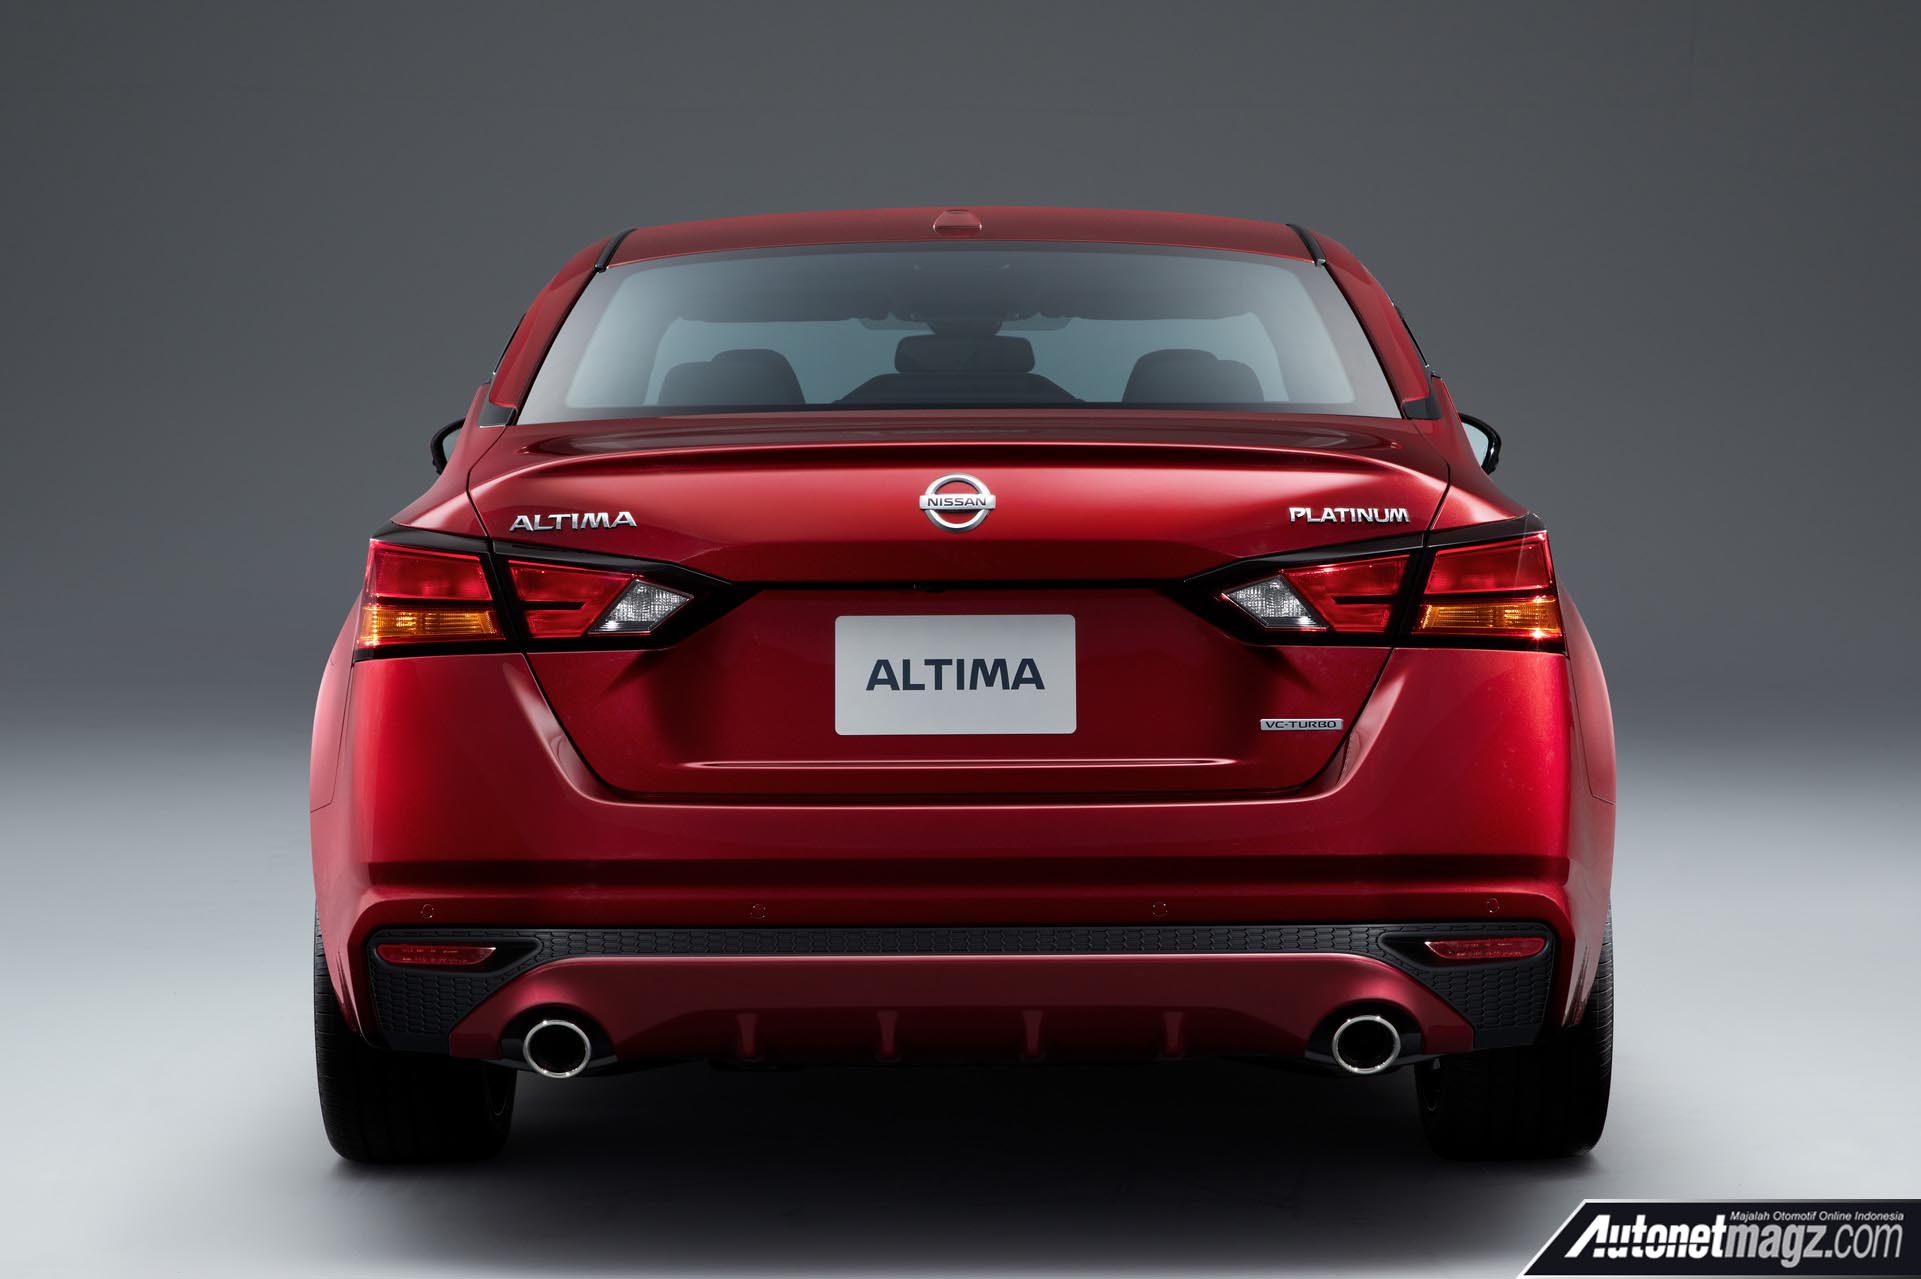 Berita, Nissan Altima 2019 sisi belakang: Nissan Altima 2019 Hadir dengan Mesin Turbo dan AWD